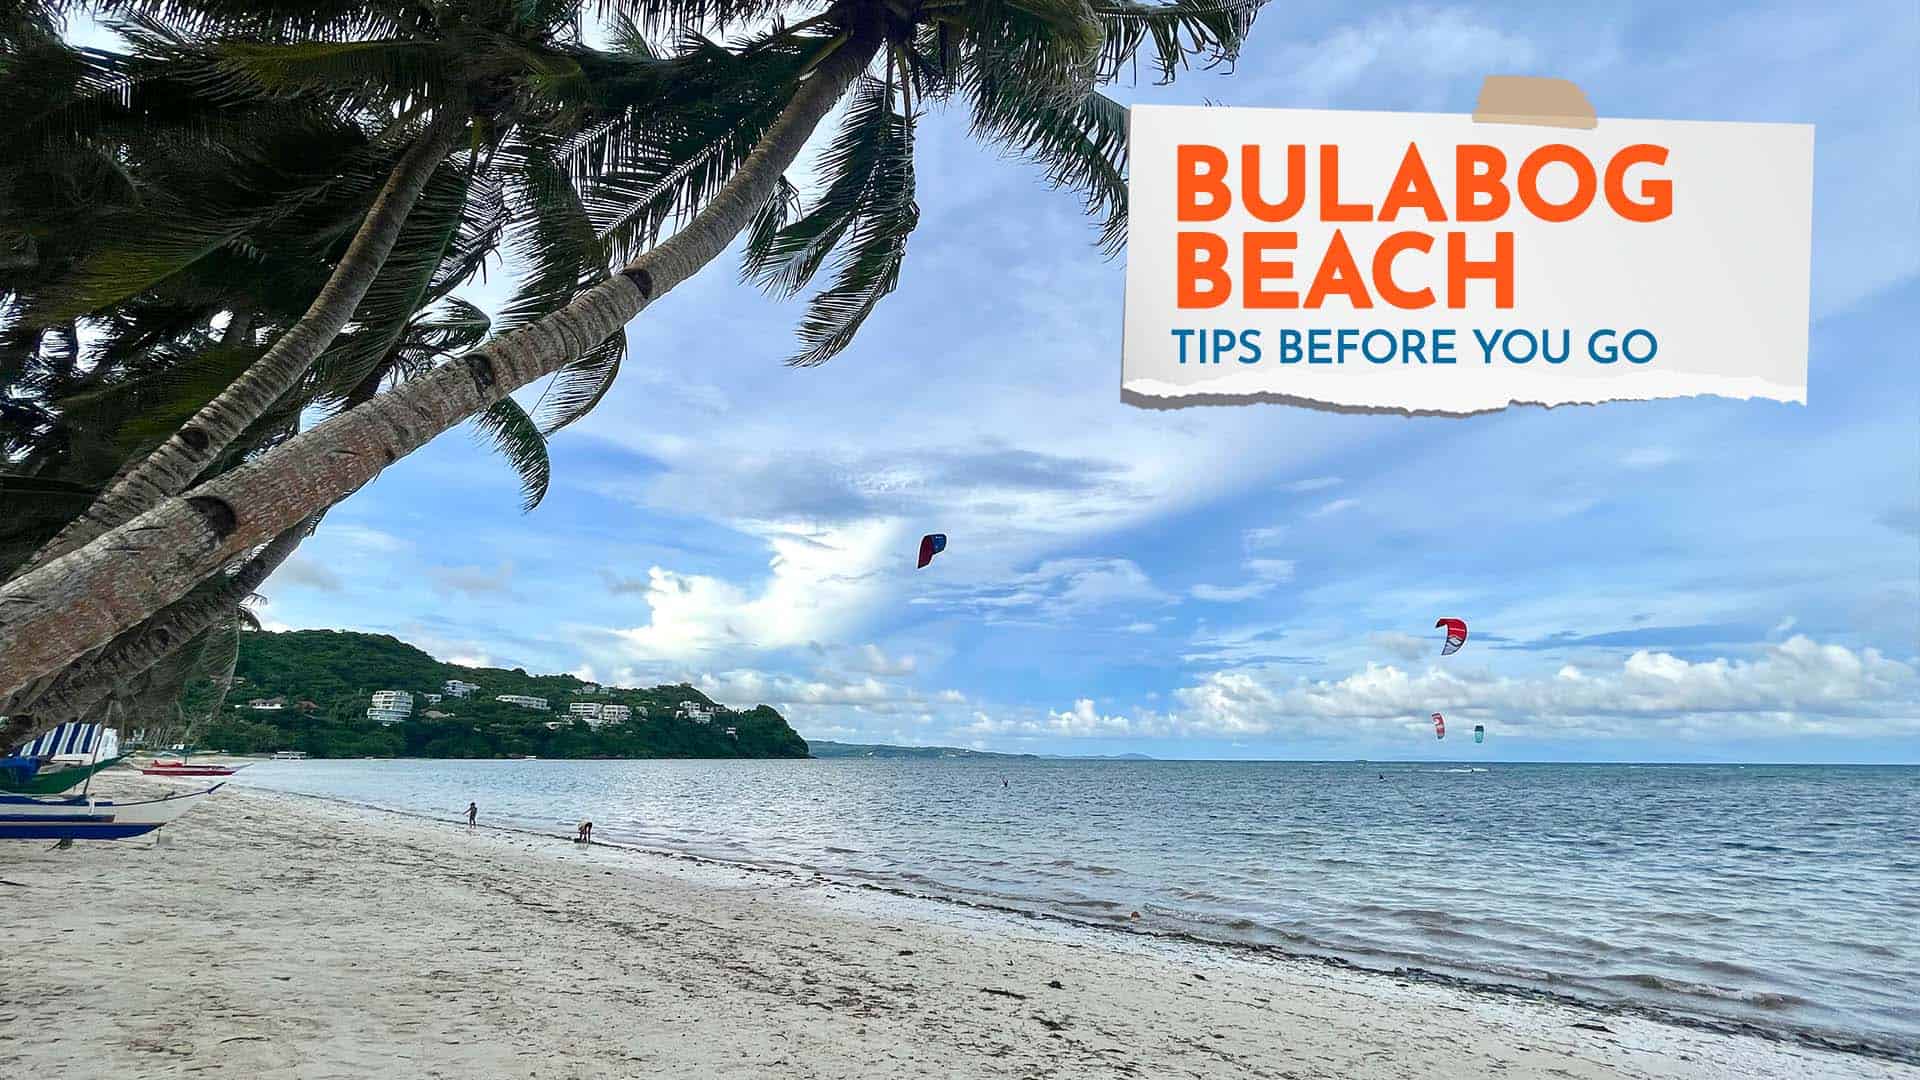 Bulabog Beach Tips Before You Go